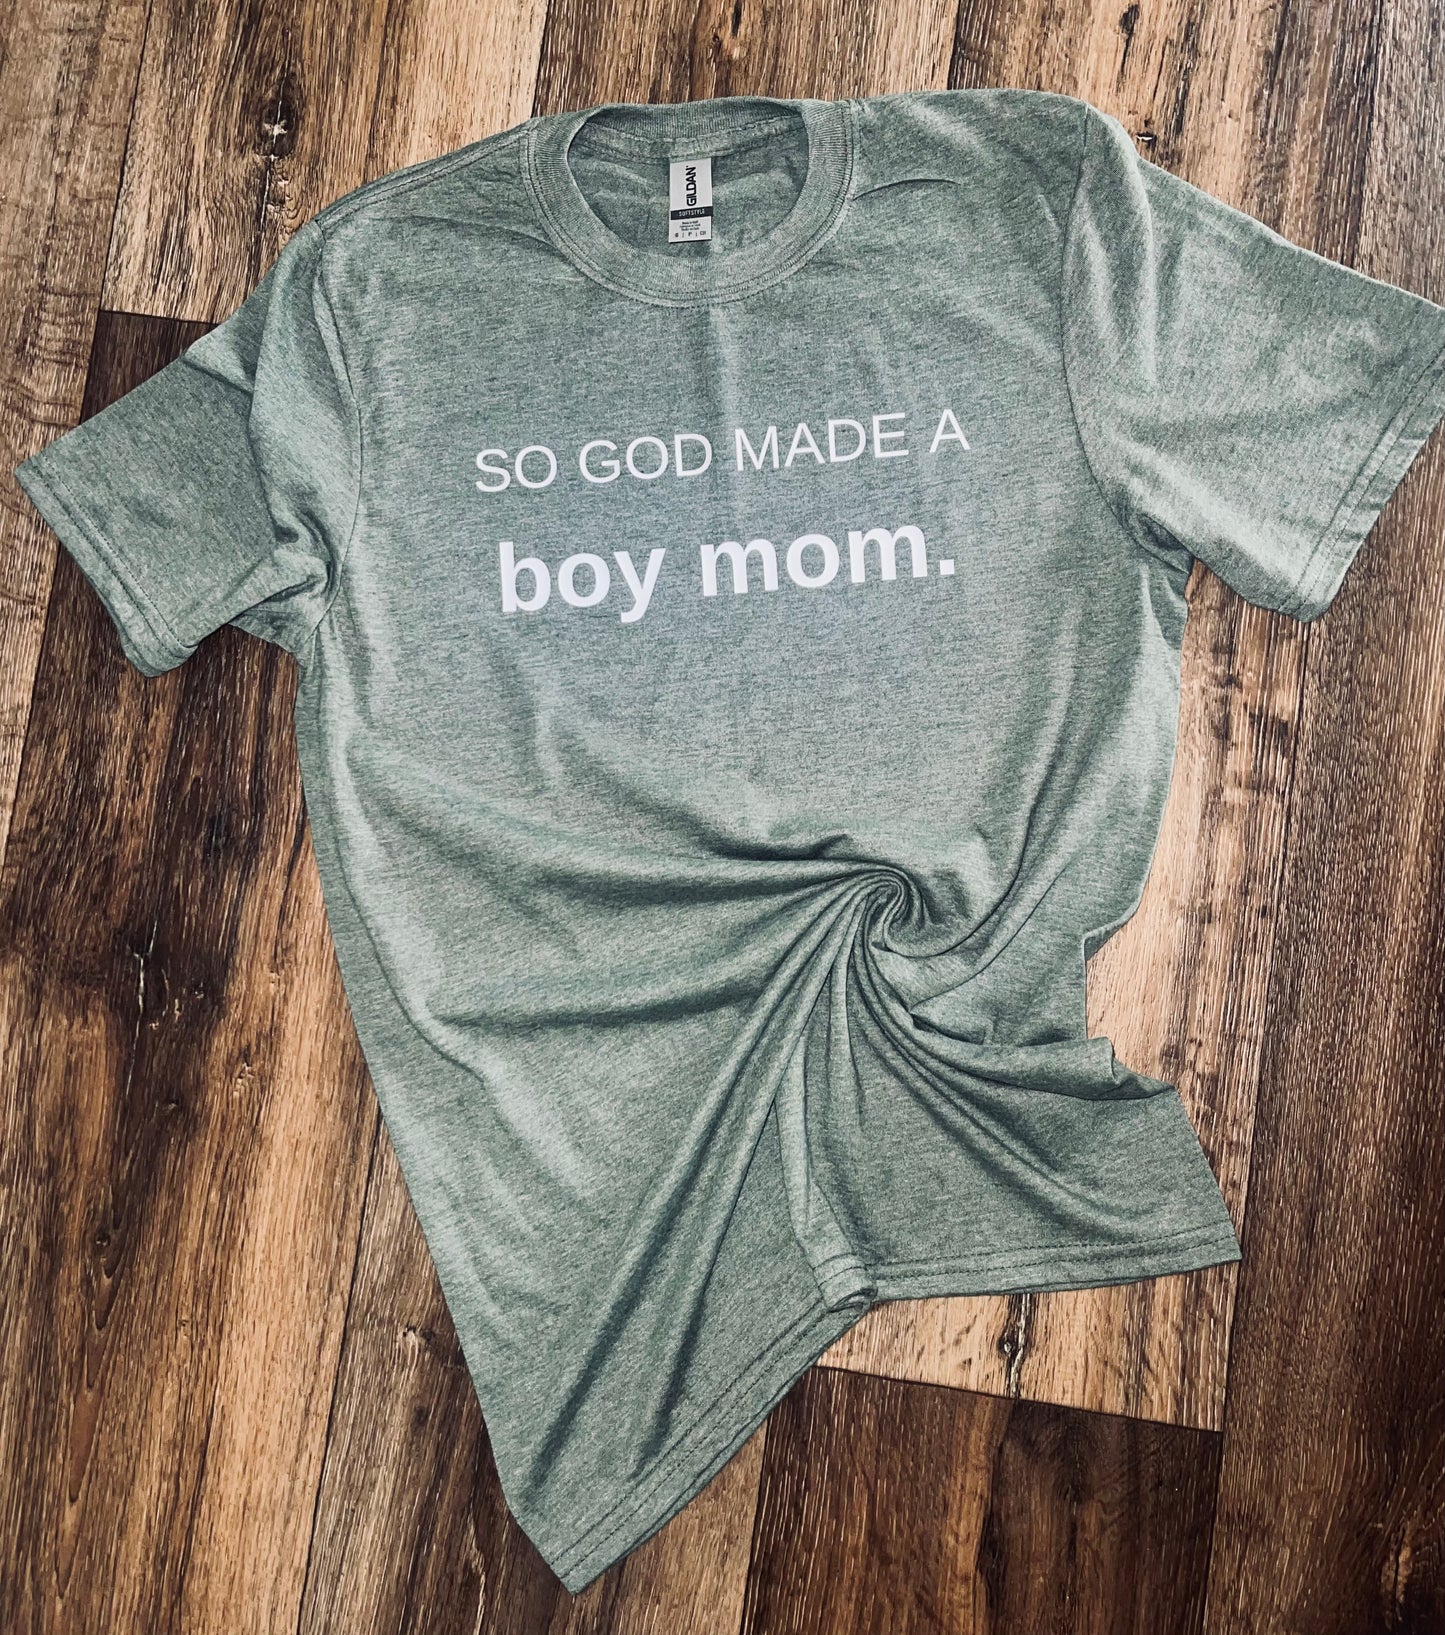 So God made a boy mom